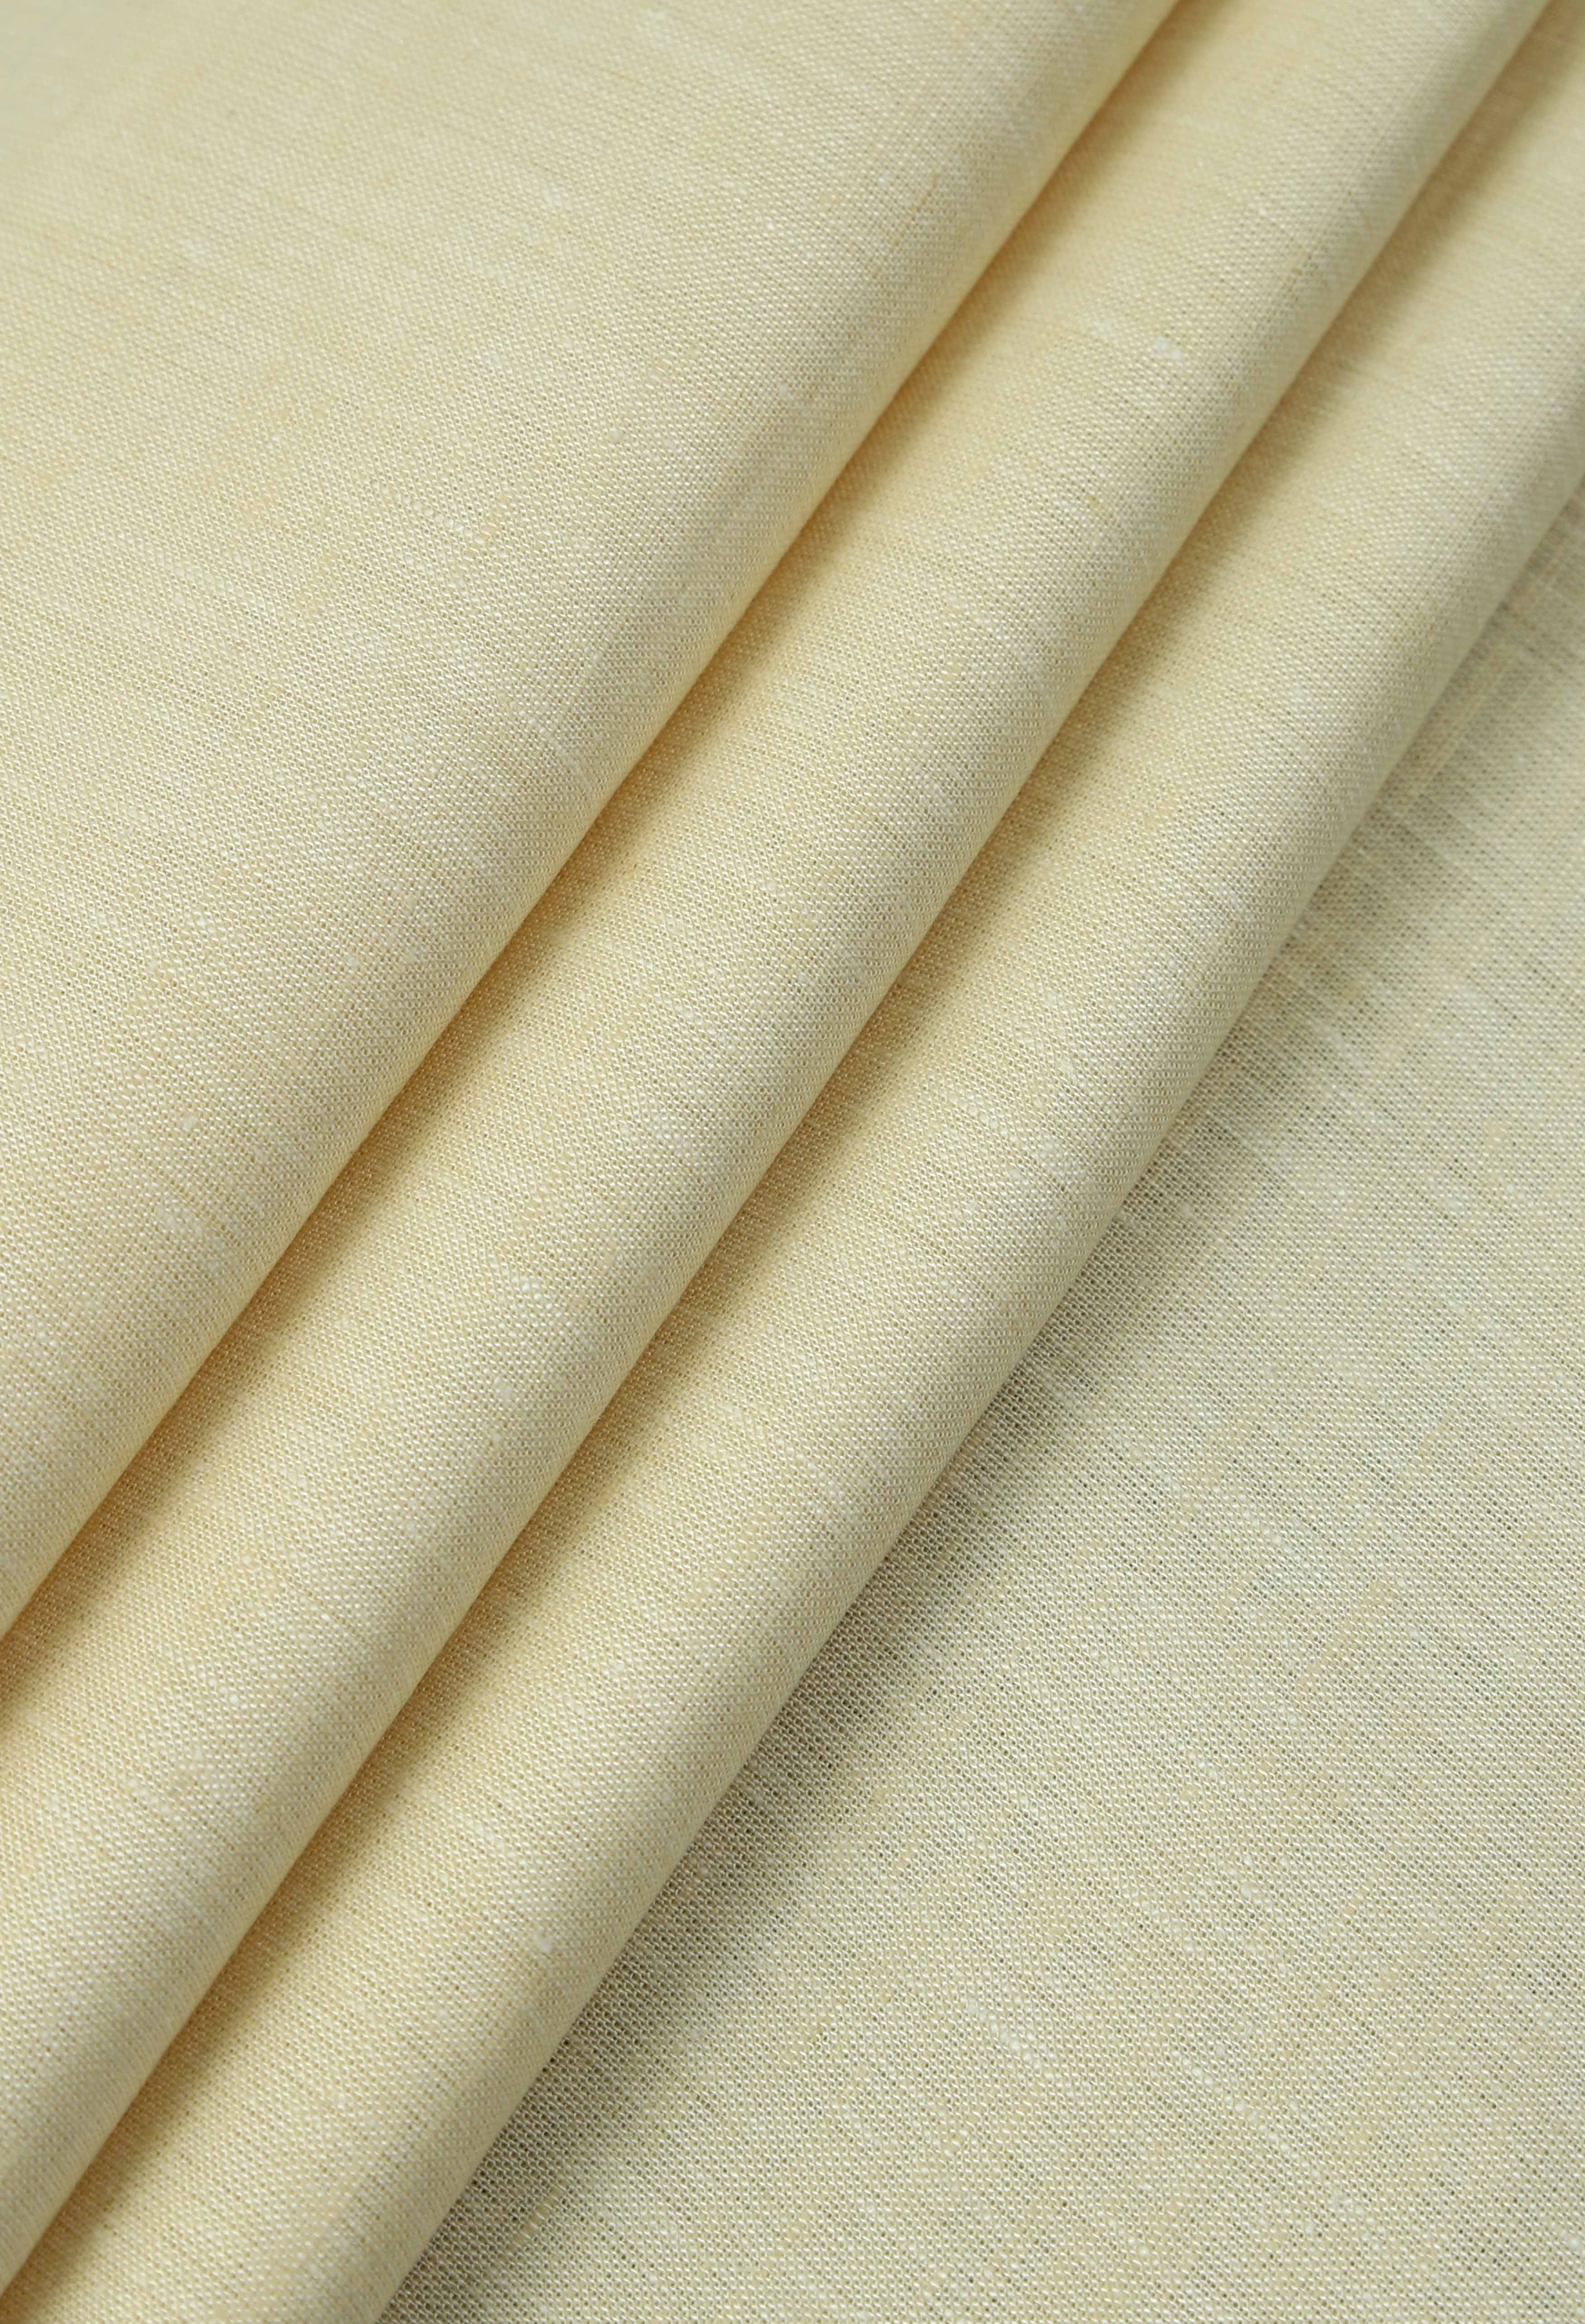 Butter Cream Linen